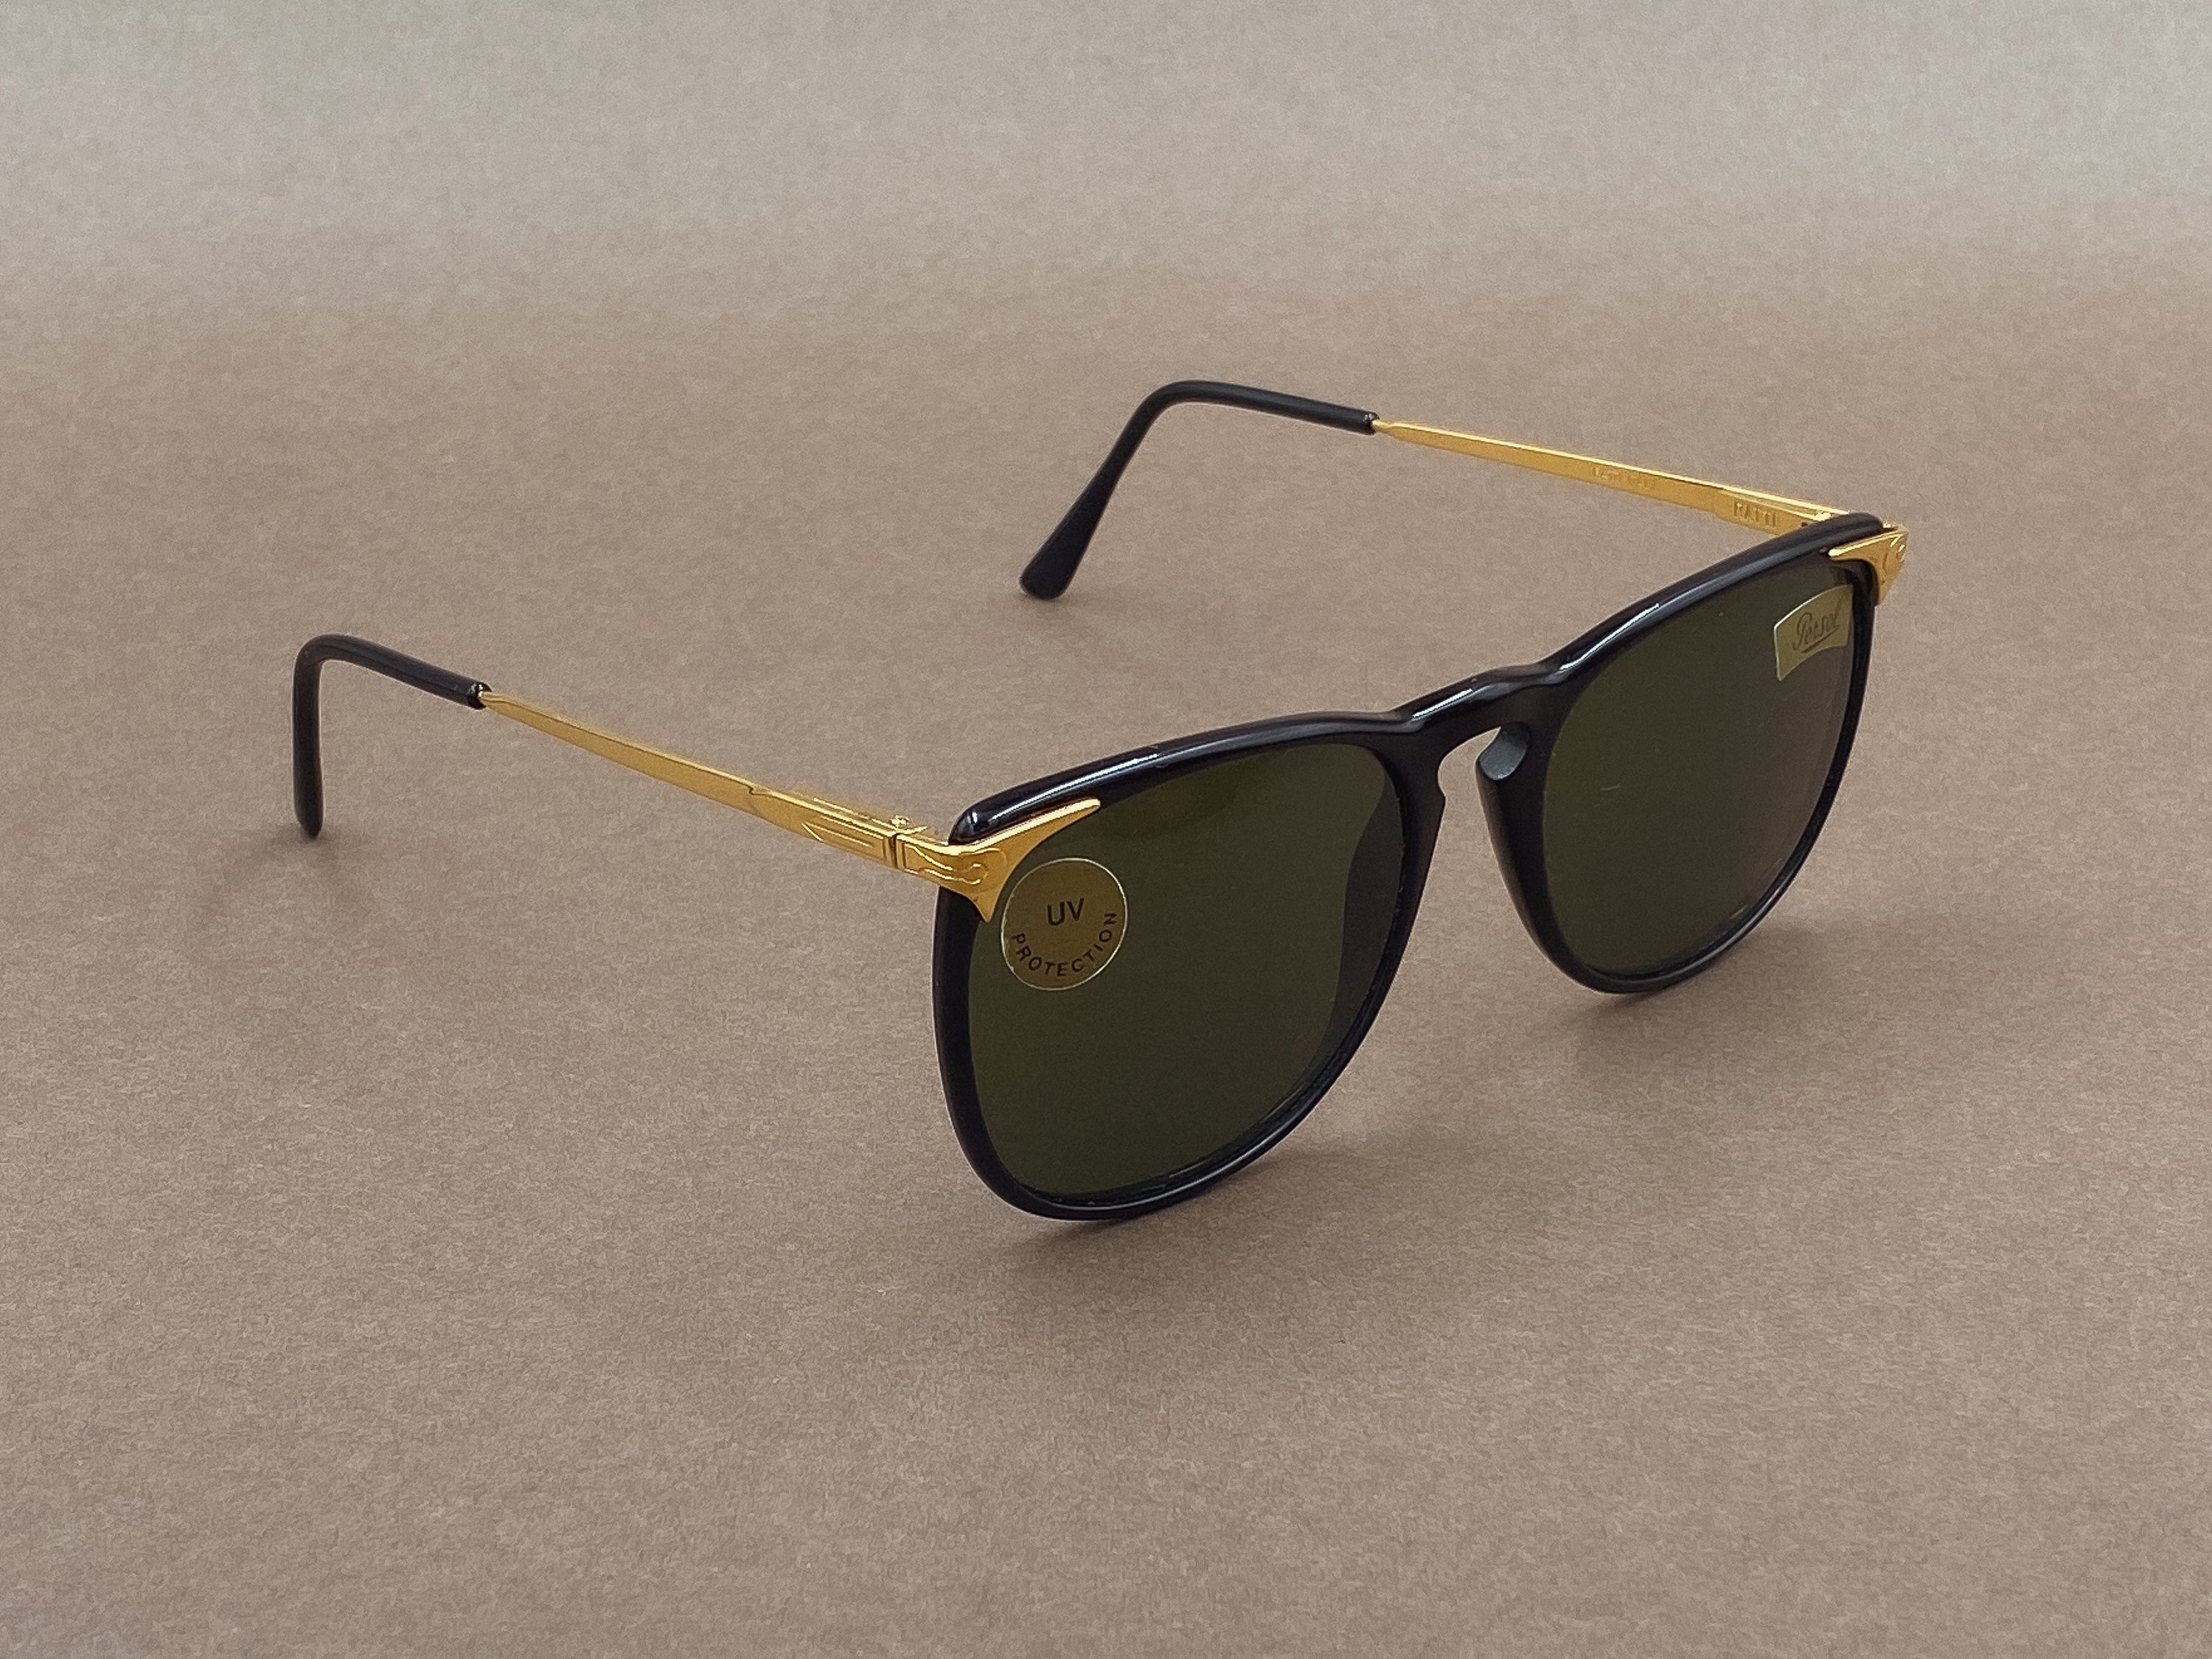 Persol Ratti Cellor 3 sunglasses